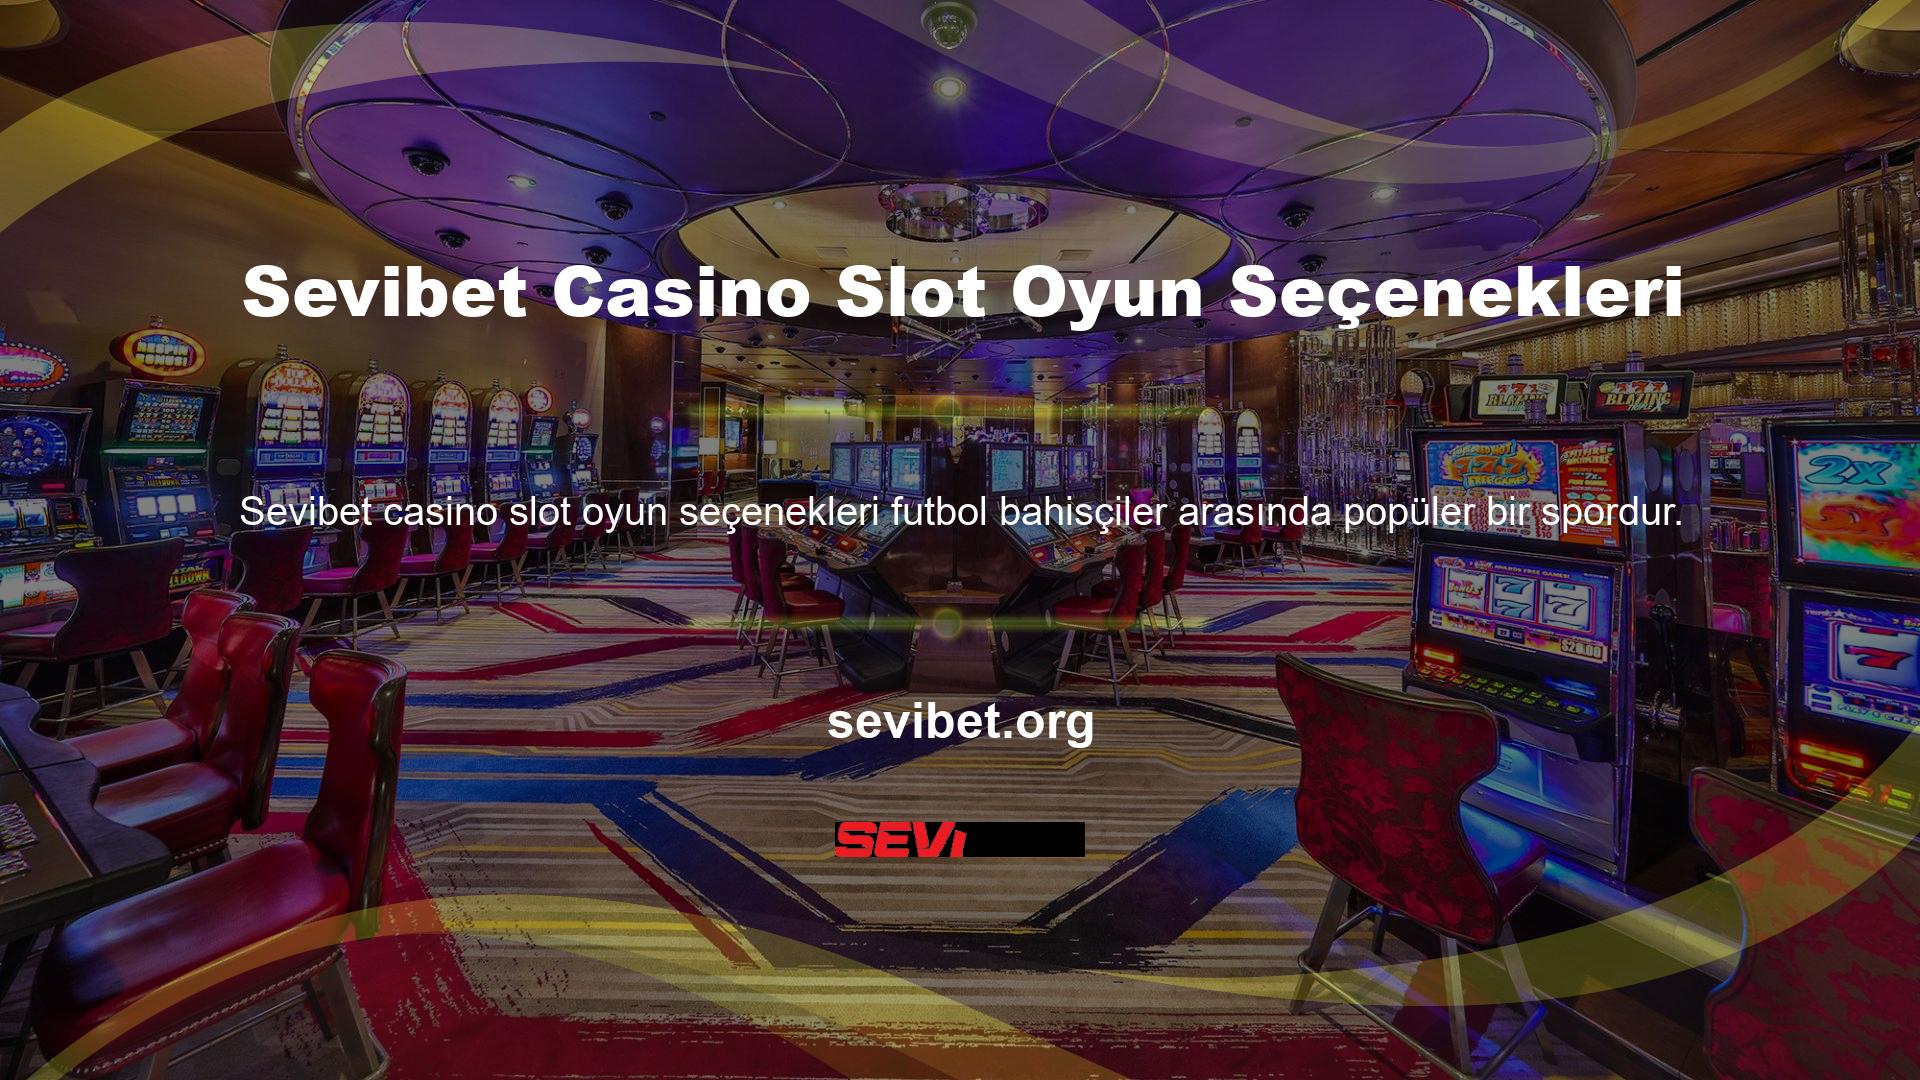 Sevibet TV casino slot oyun seçeneği, birçok bahis seçeneğine sahip olması ve izlemesi oldukça eğlenceli ve heyecan verici olması nedeniyle önde gelen seçeneklerden biridir